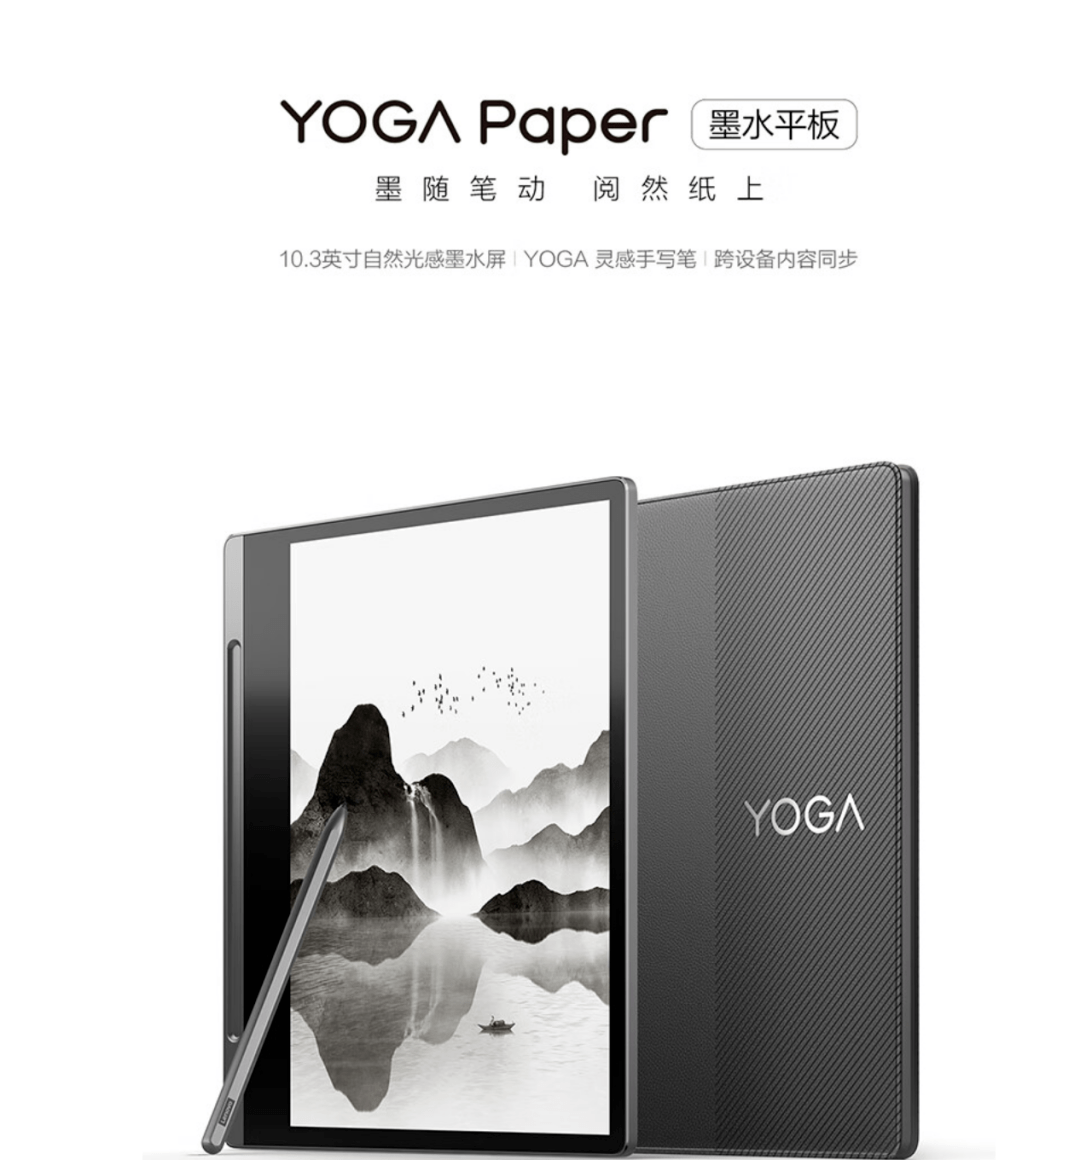 华为手机内录音频
:到手价 2699 元，联想 YOGA Paper 墨水平板开启预售